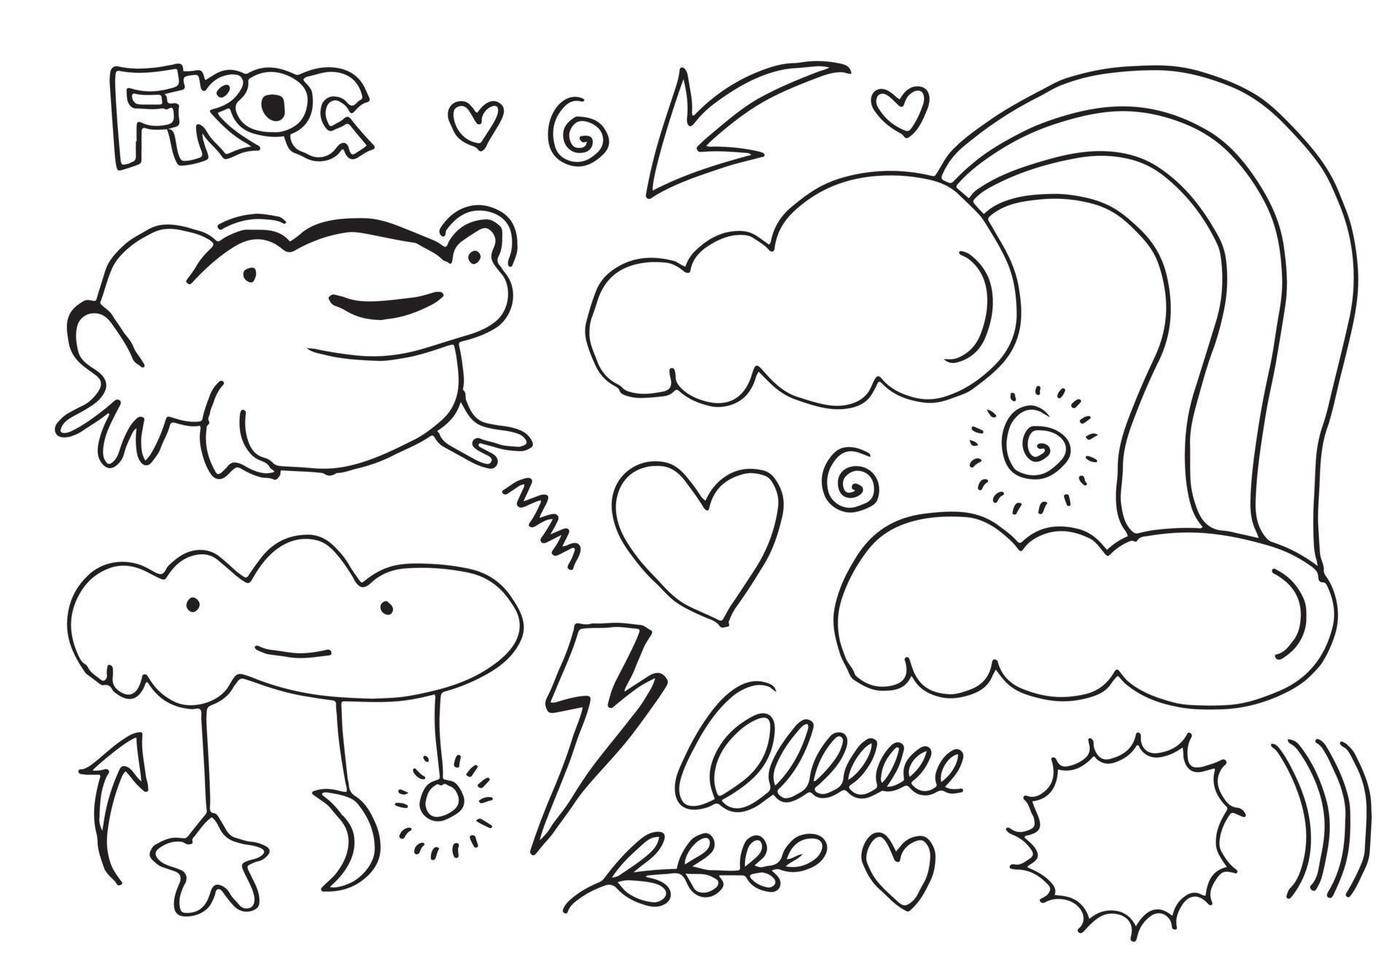 illustrazione vettoriale schizzo disegnato a mano di una rana con frecce, cuore, luna, foglie, stelle, fuochi d'artificio e nuvole e altri elementi di design. disegno della linea.